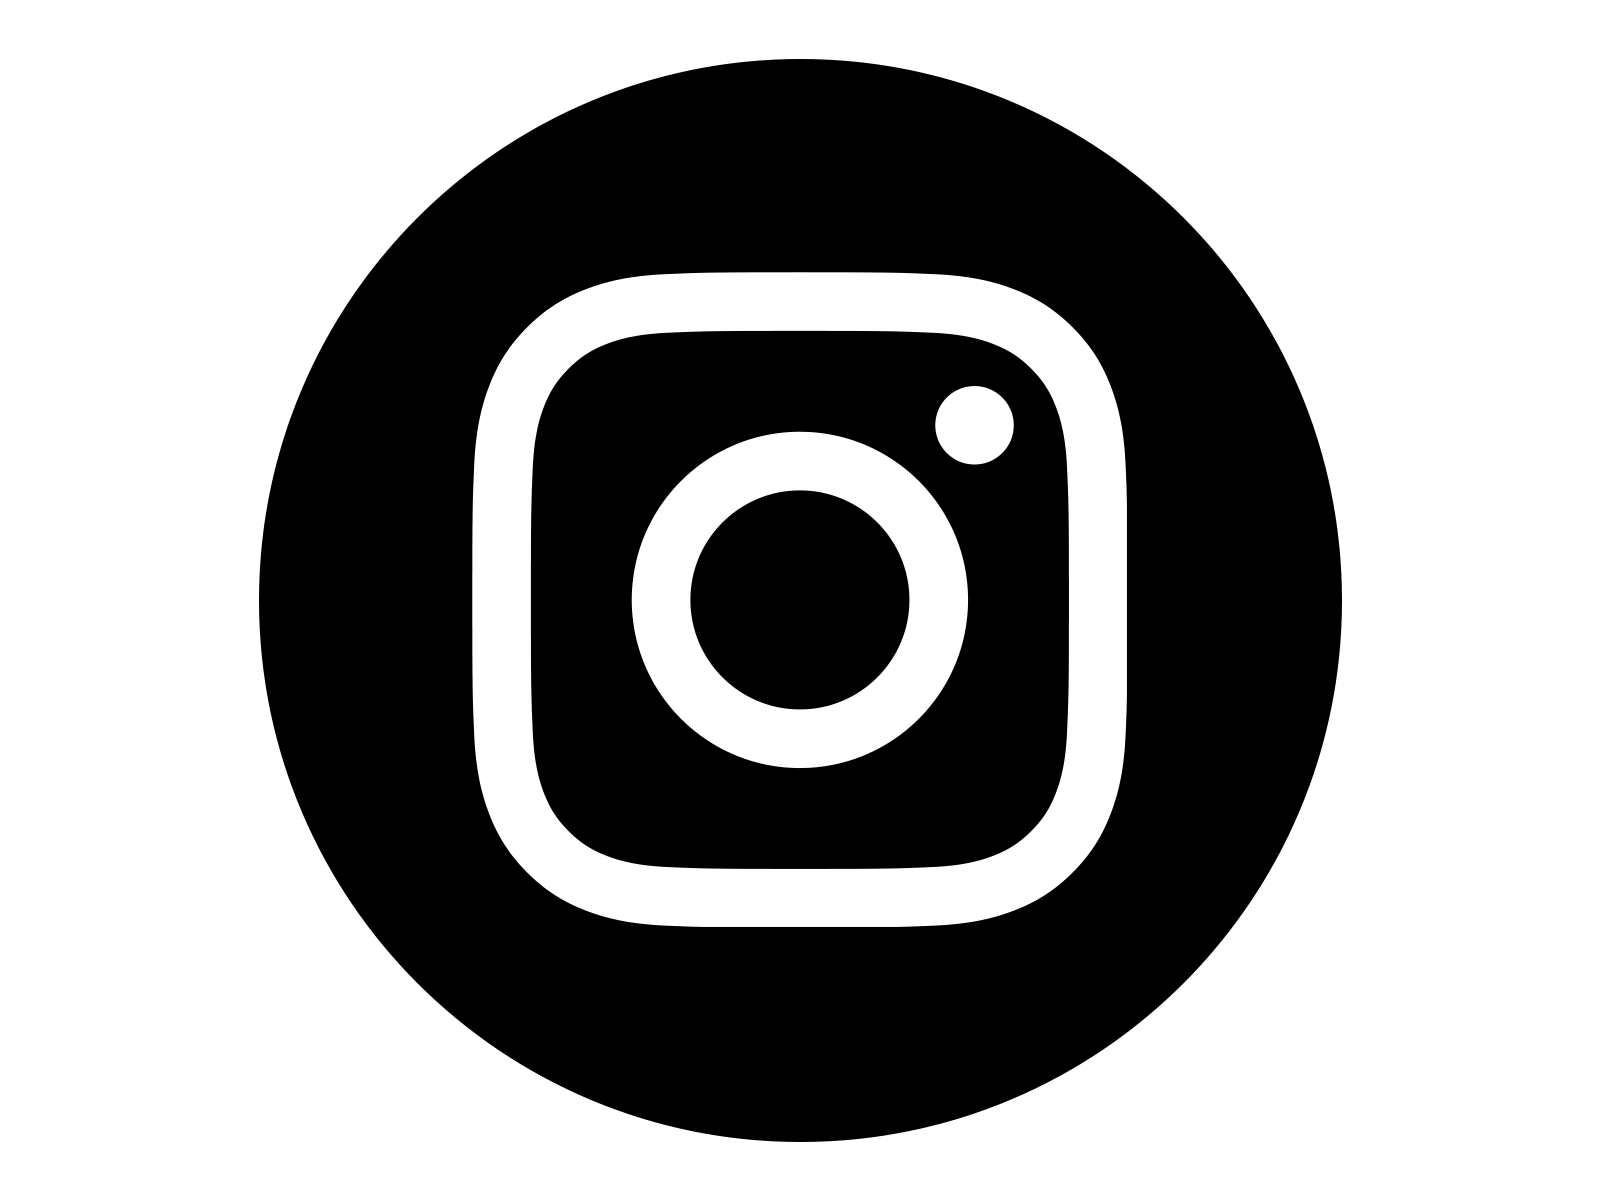 Download Instagram PNG Image Transparent Background | PNG Arts